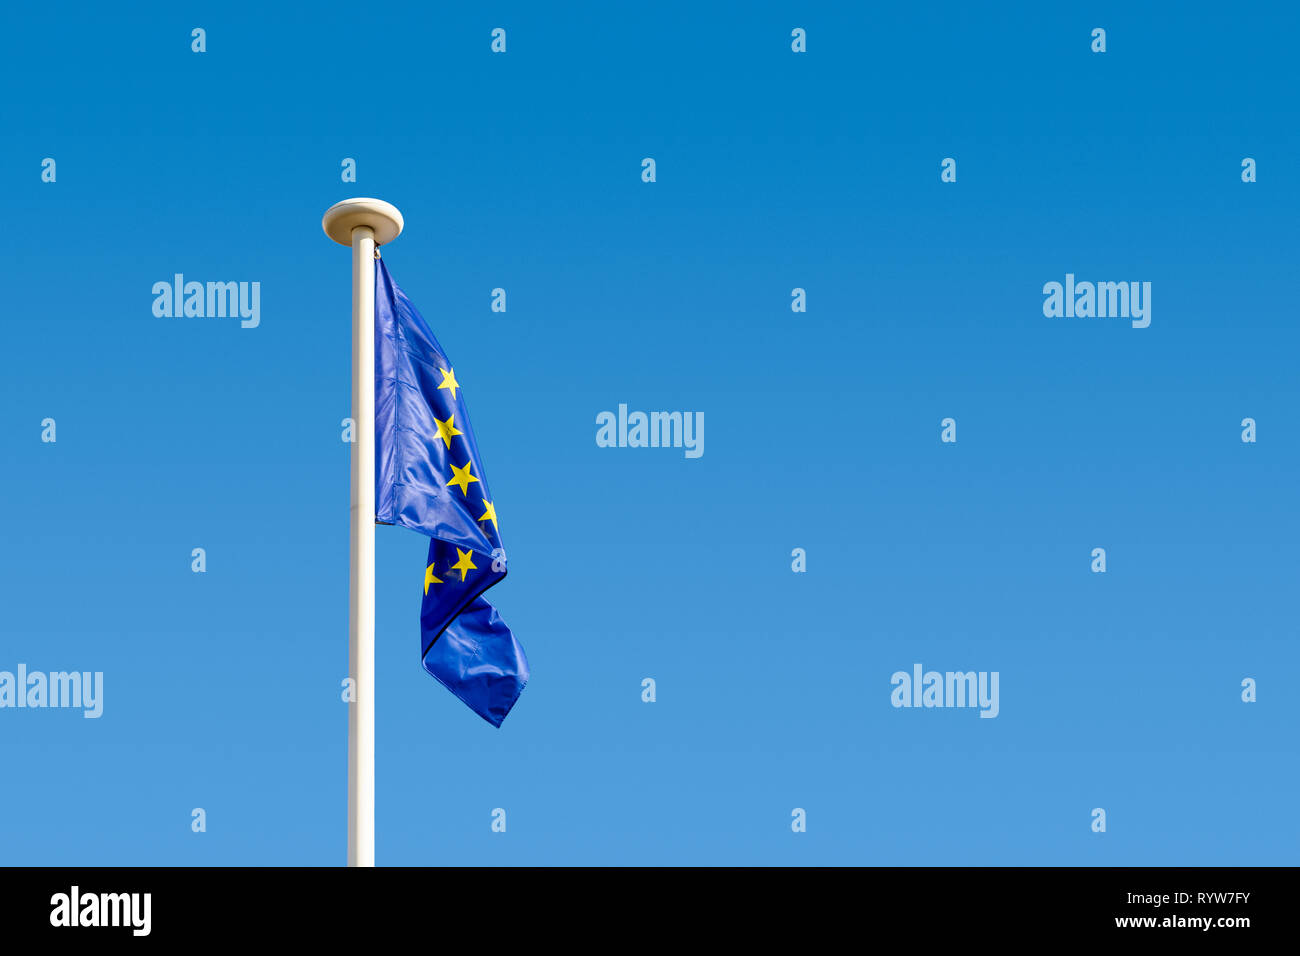 Drapeau Union Européenne officiel avec hampe - Drapeau UE